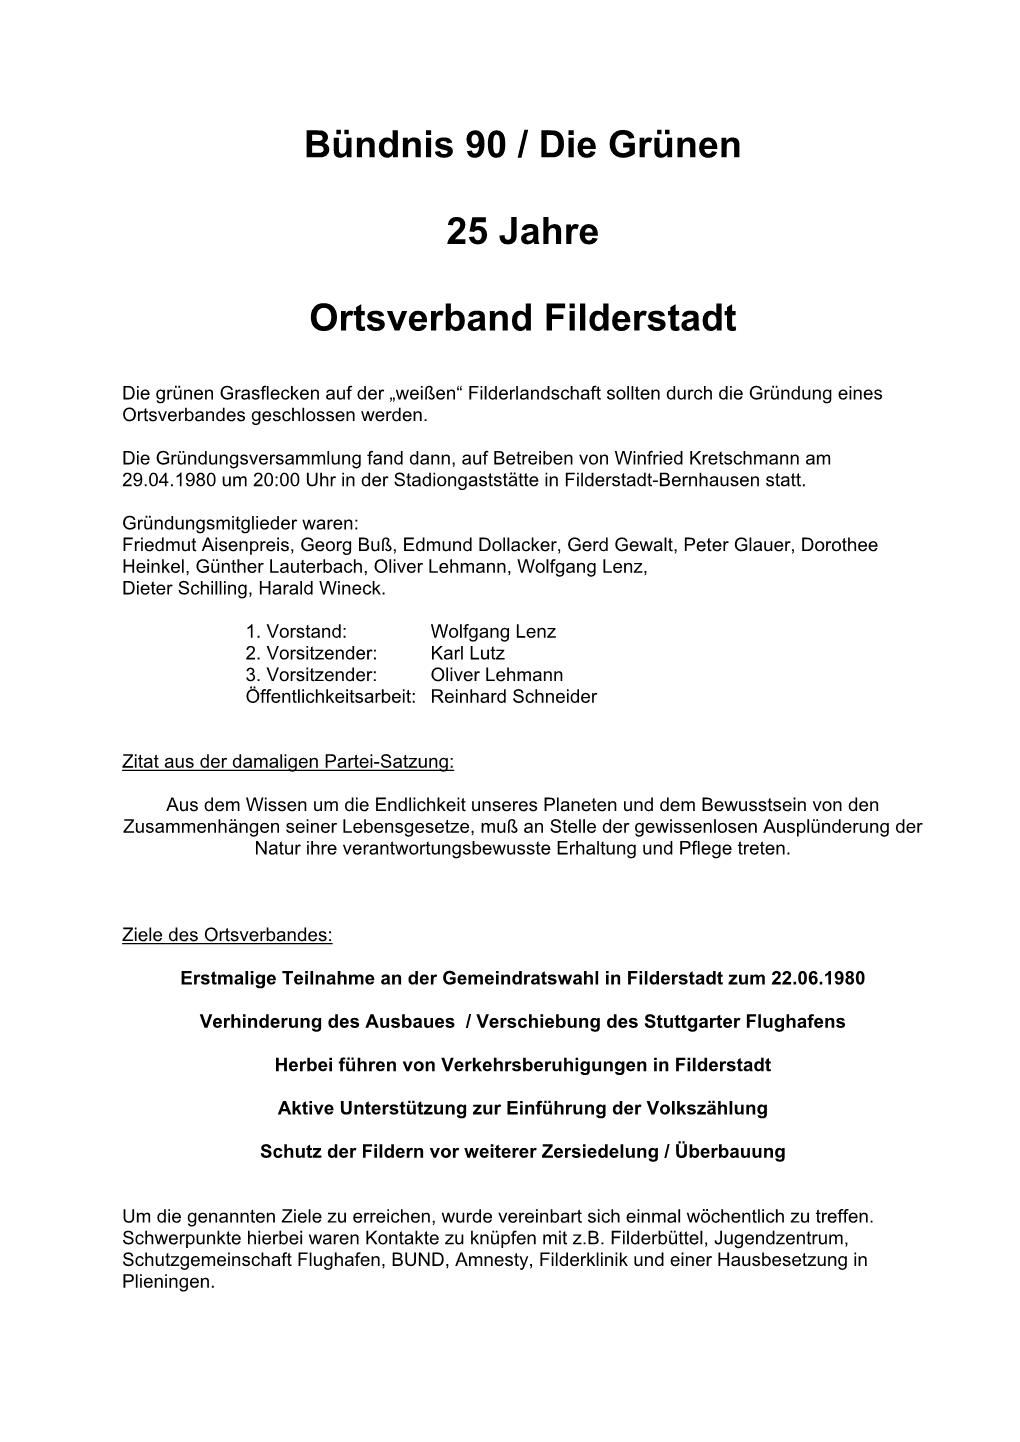 Bündnis 90 / Die Grünen 25 Jahre Ortsverband Filderstadt